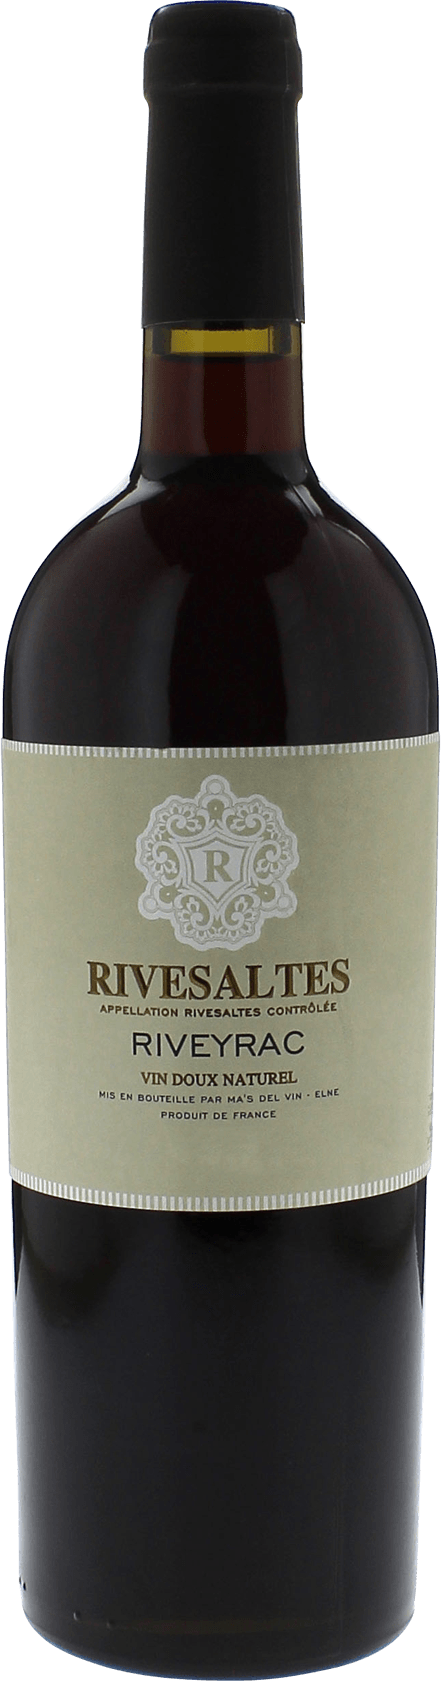 Riveyrac 1966 Vin doux naturel Rivesaltes, Vin doux naturel